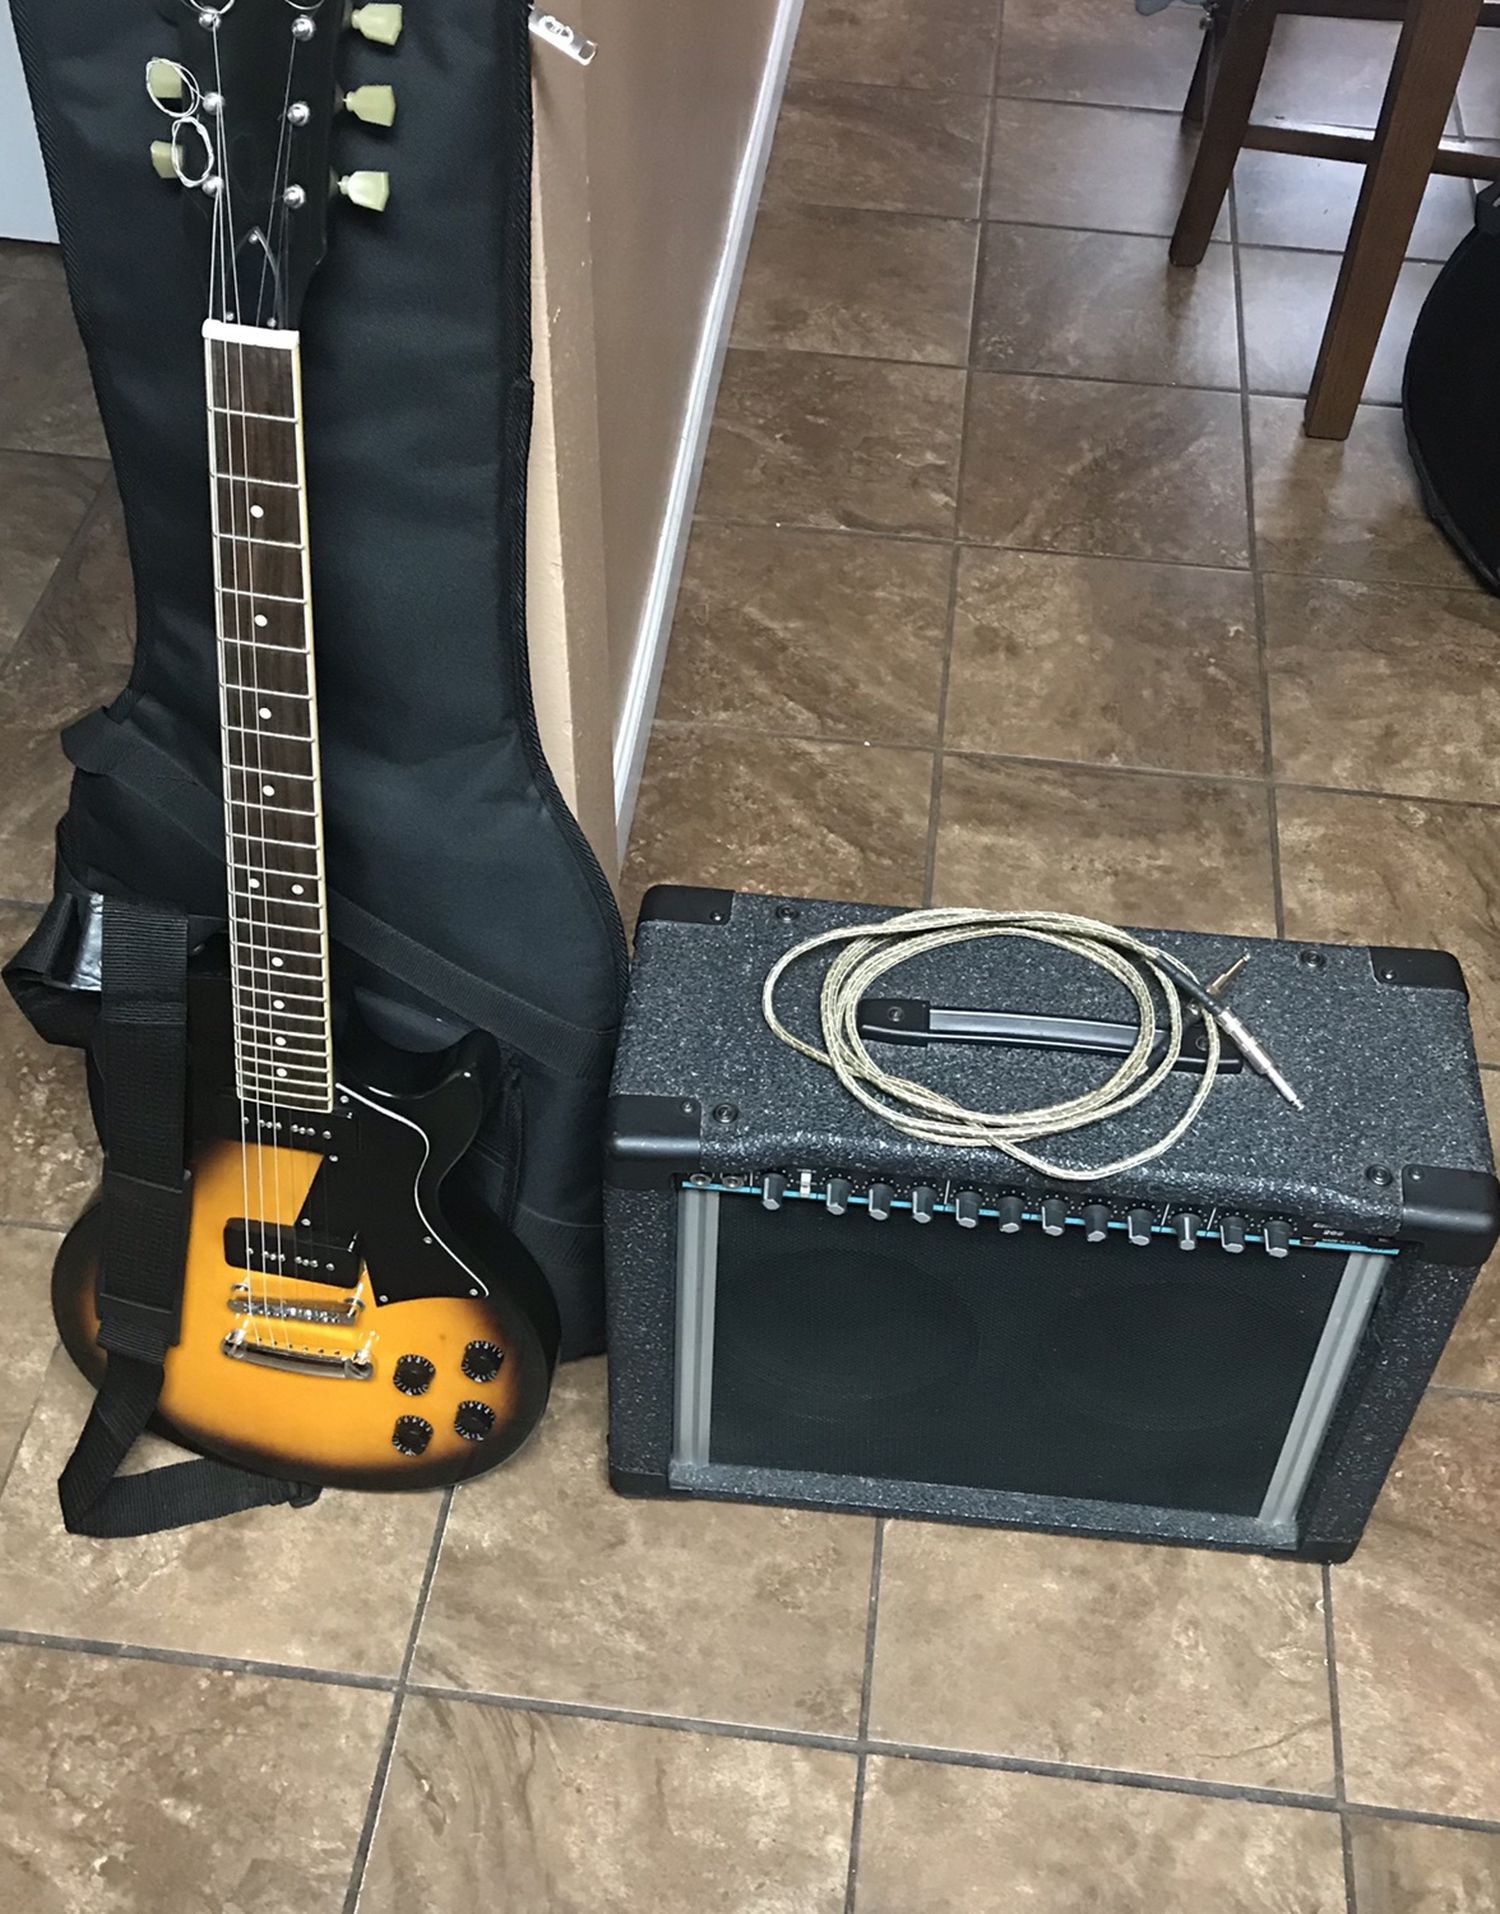 Austin Electric Guitar & Peavey Amp 150 Watts Brown (EXCELLENT CONDITION‼️BUNDLE DEAL‼️)